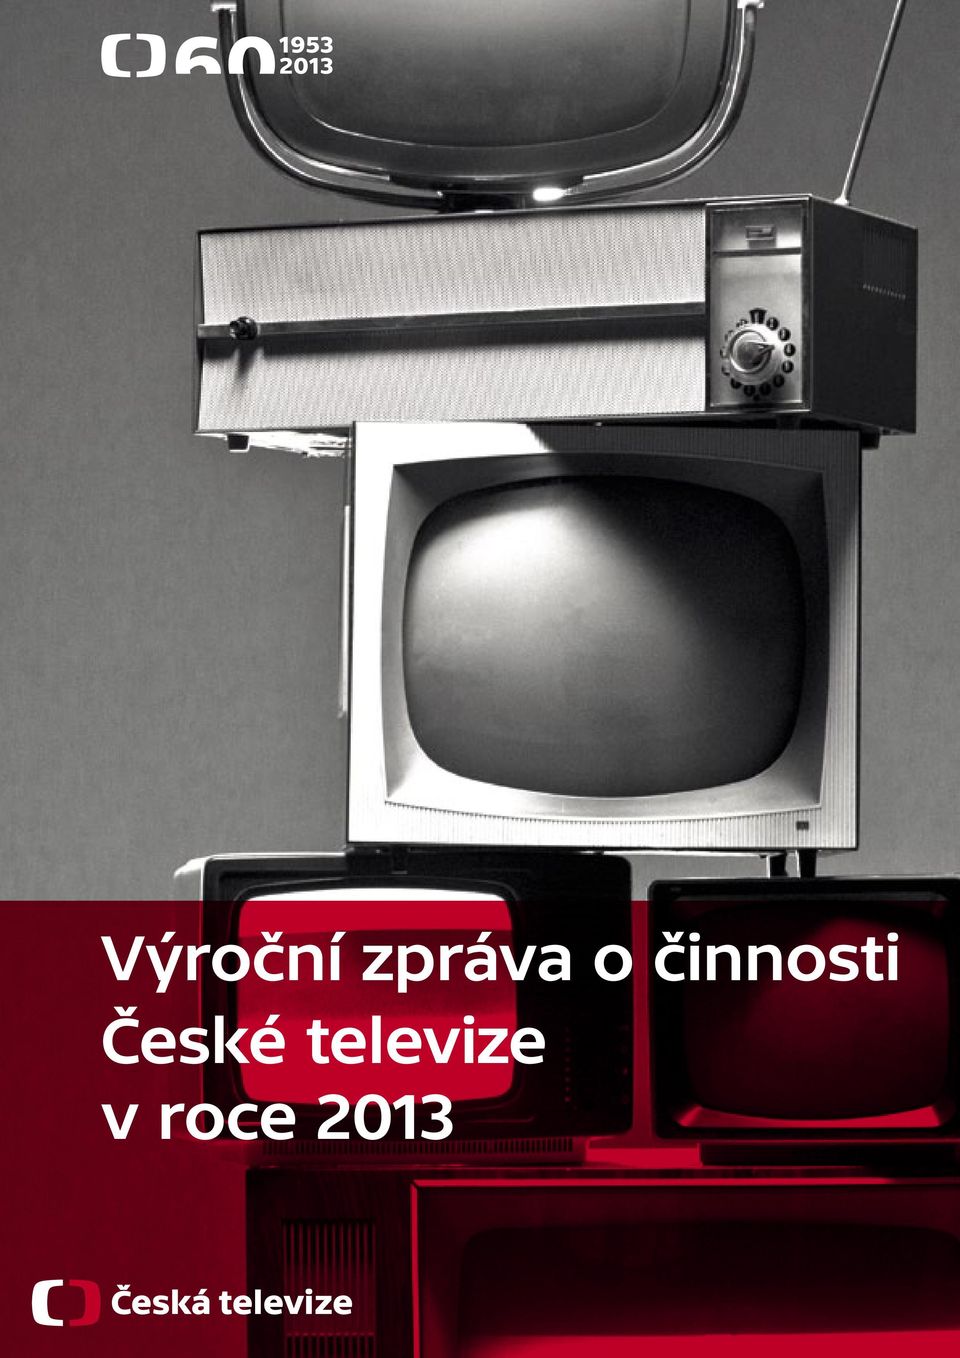 České televize